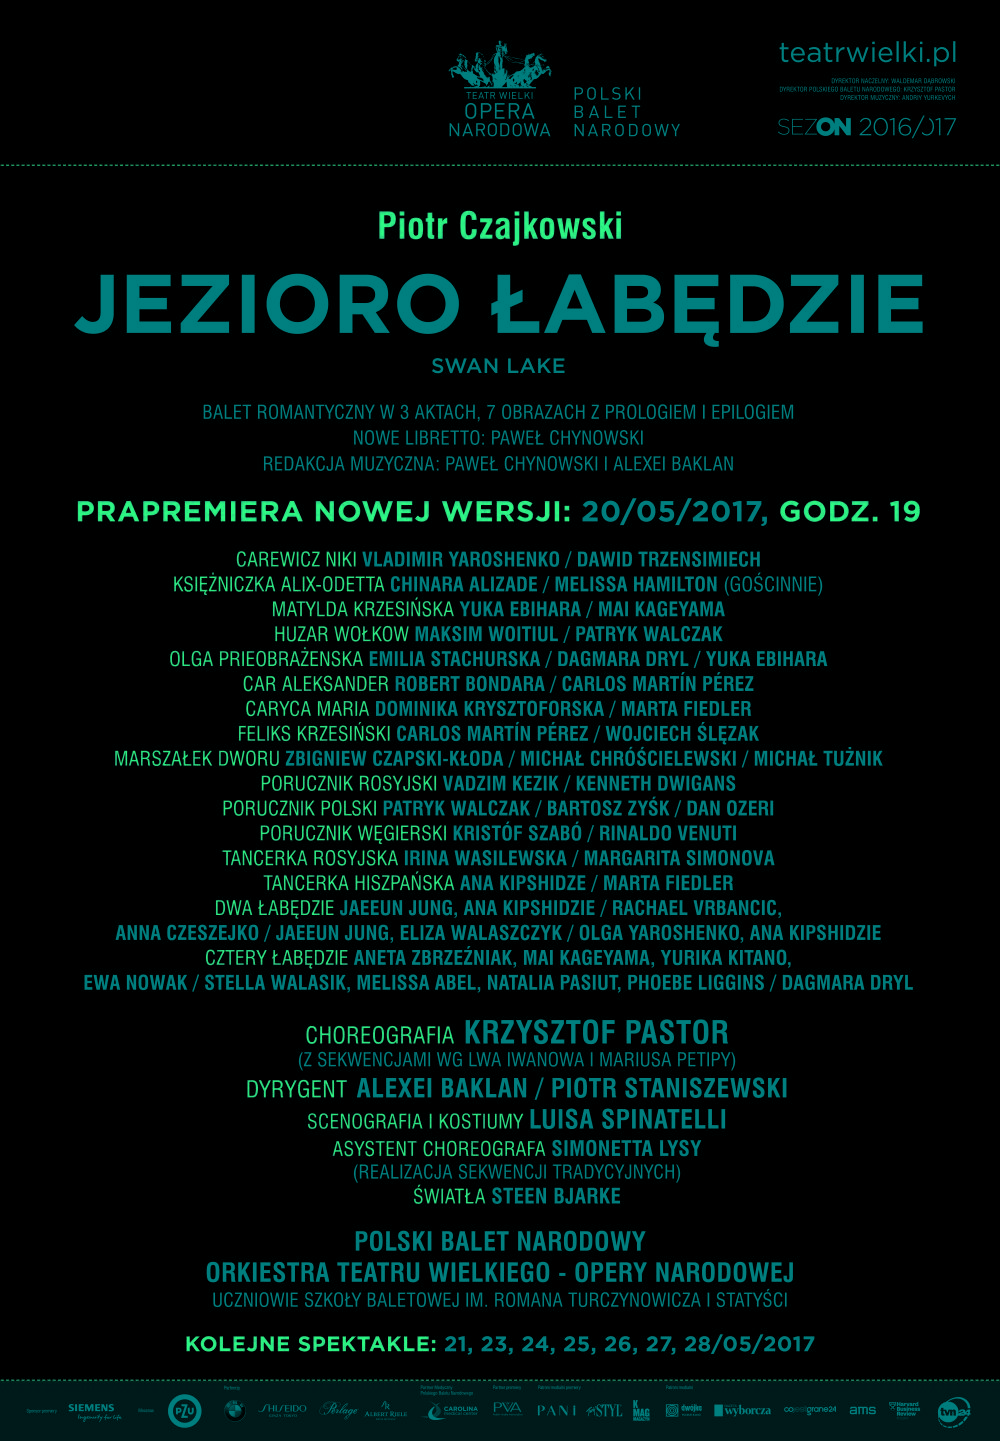 Afisz "Jezioro łabędzie" Piotr Czajkowski / Krzysztof Pastor prapremiera nowej wersji 2017-05-20